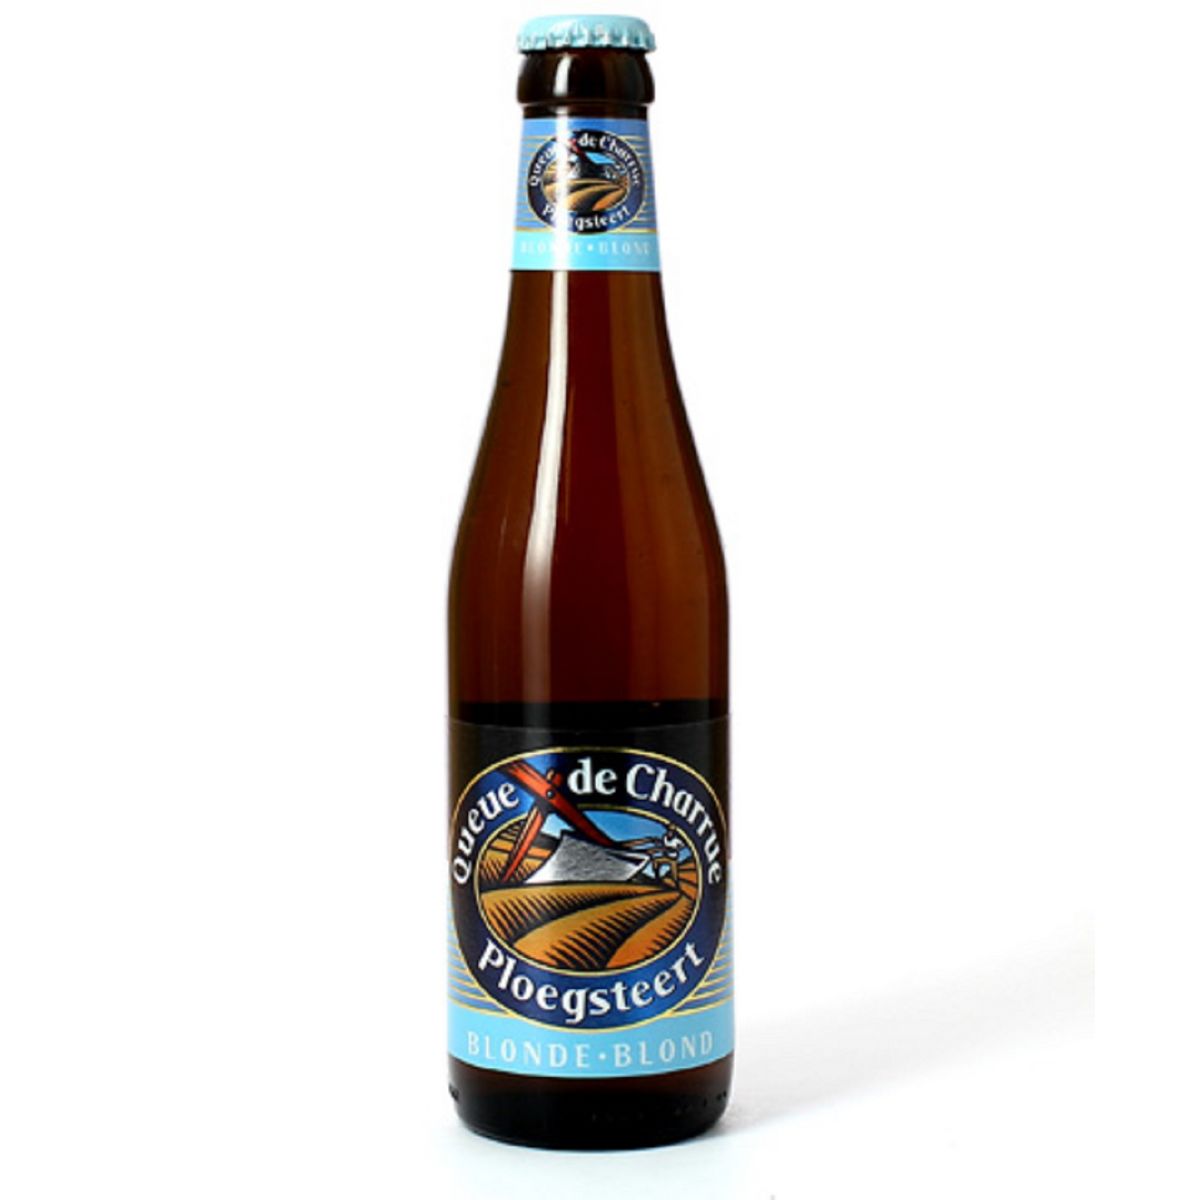 QUEUE DE CHARRUE Bière blonde 6,6% bouteille 33cl